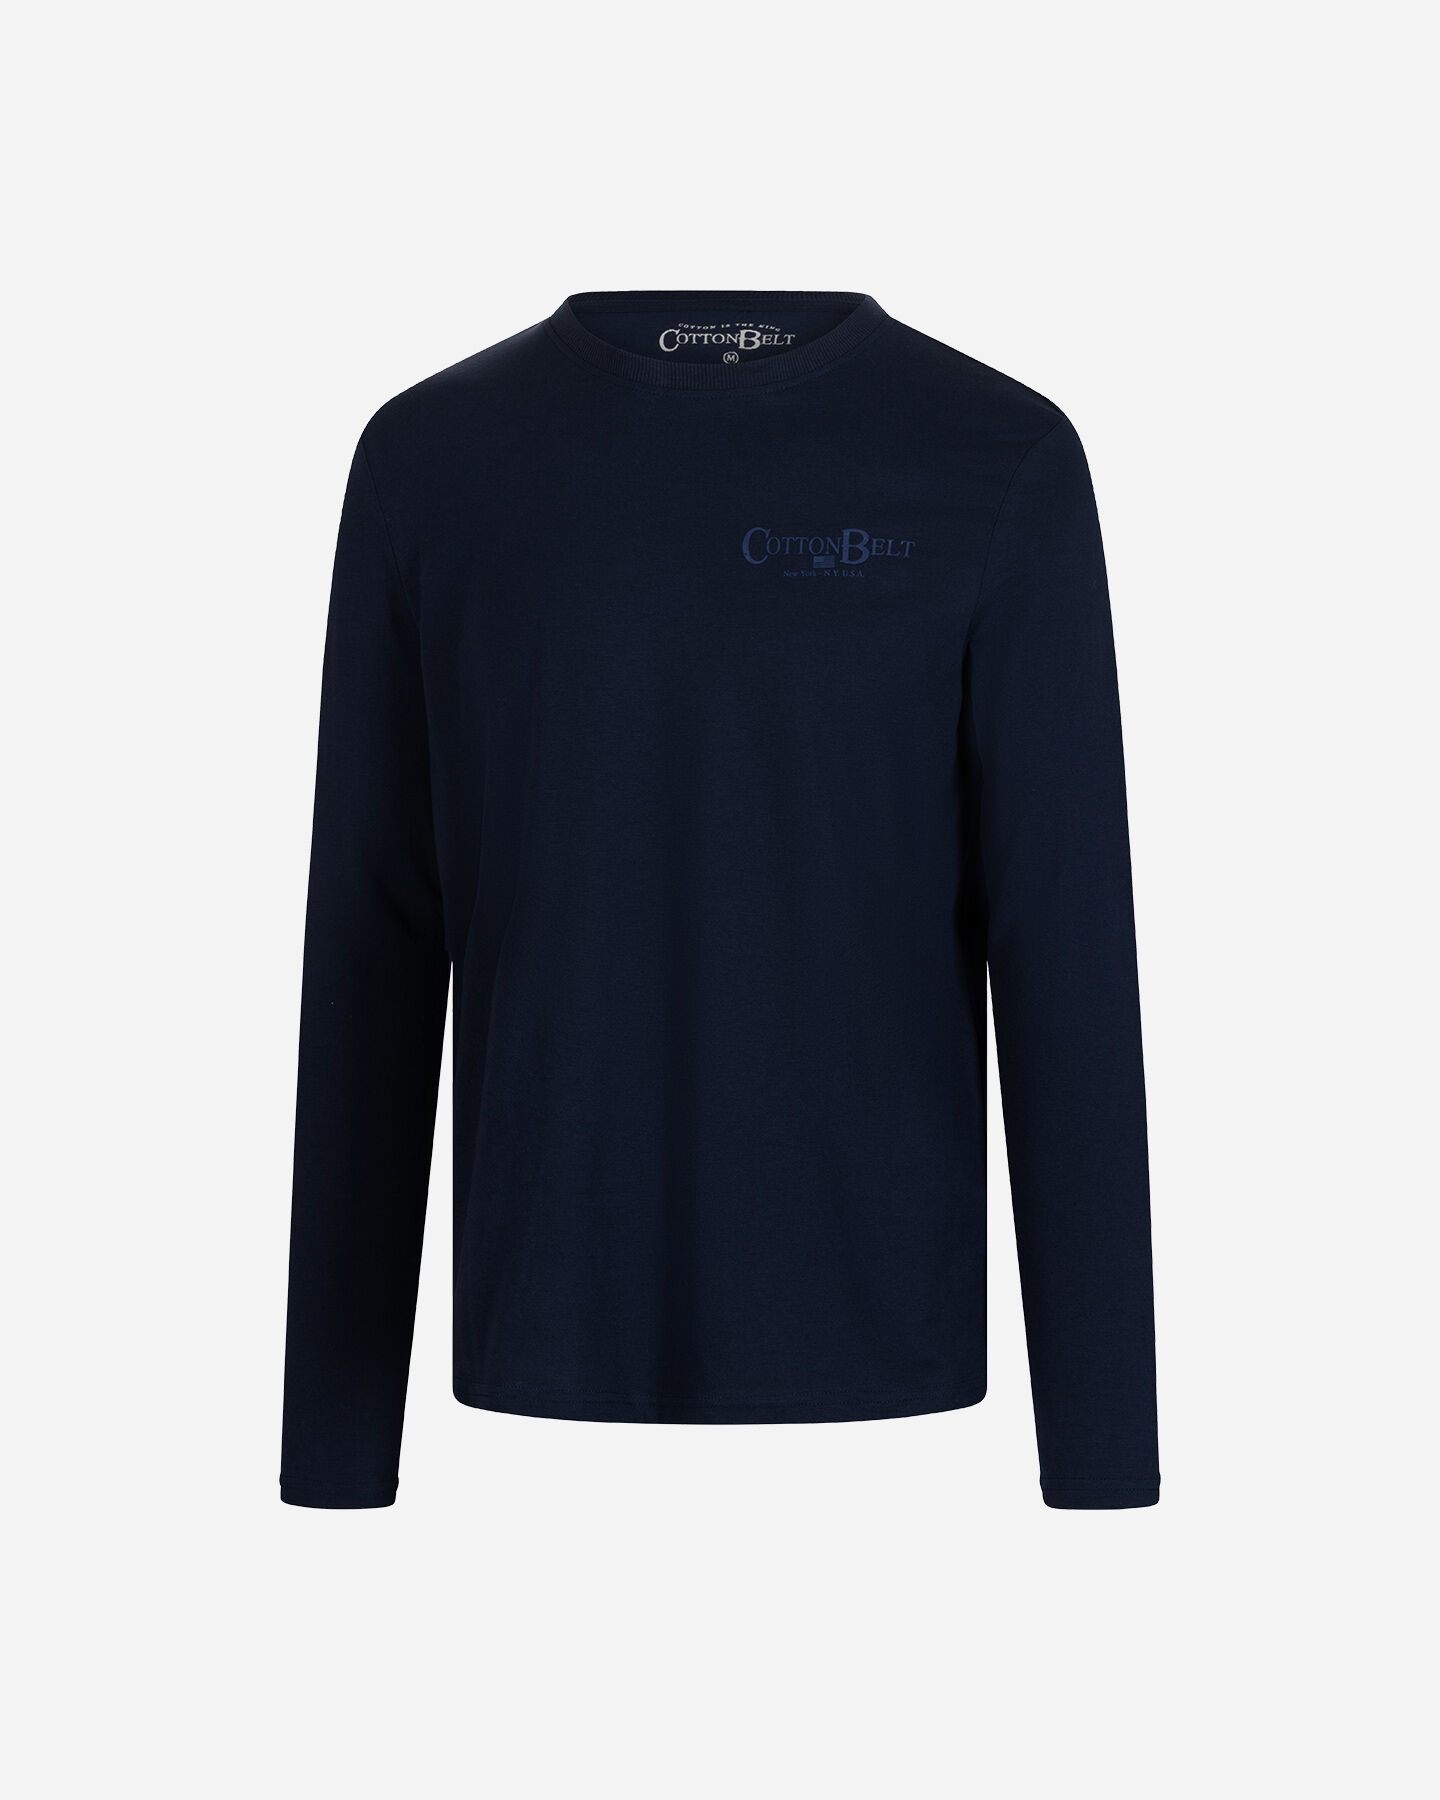  T-Shirt COTTON BELT ESSENTIAL M S4126995|516|XXL scatto 5